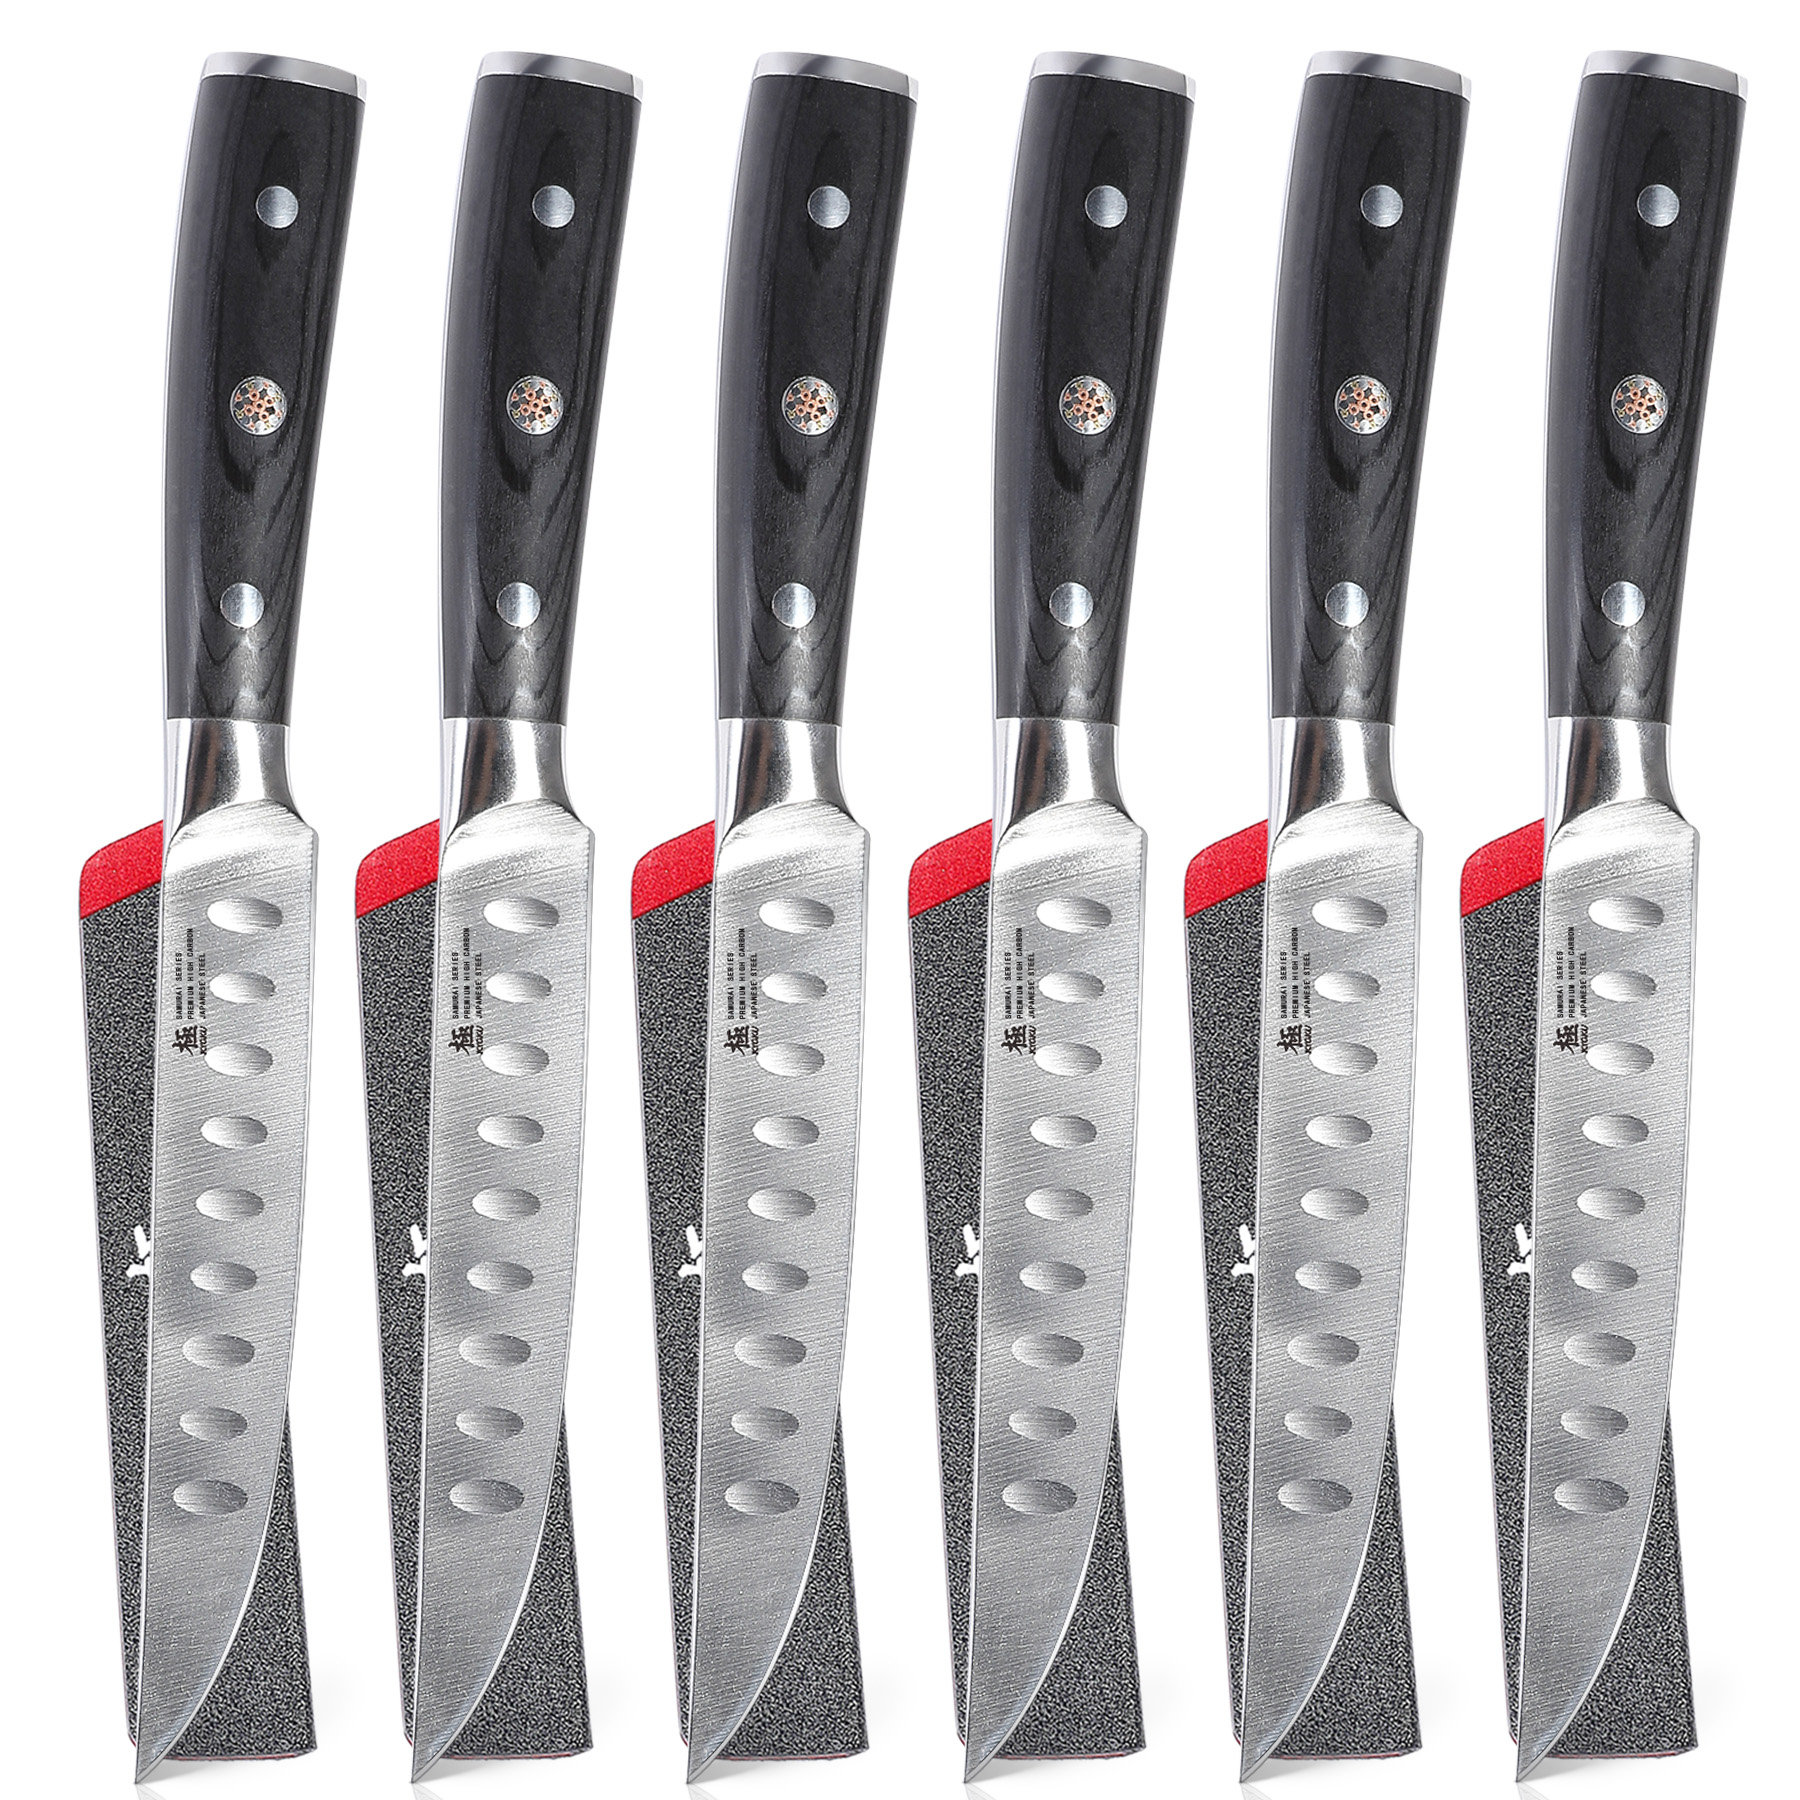 https://assets.wfcdn.com/im/58208446/compr-r85/2416/241606380/kyoku-6-piece-high-carbon-stainless-steel-steak-knife-set.jpg